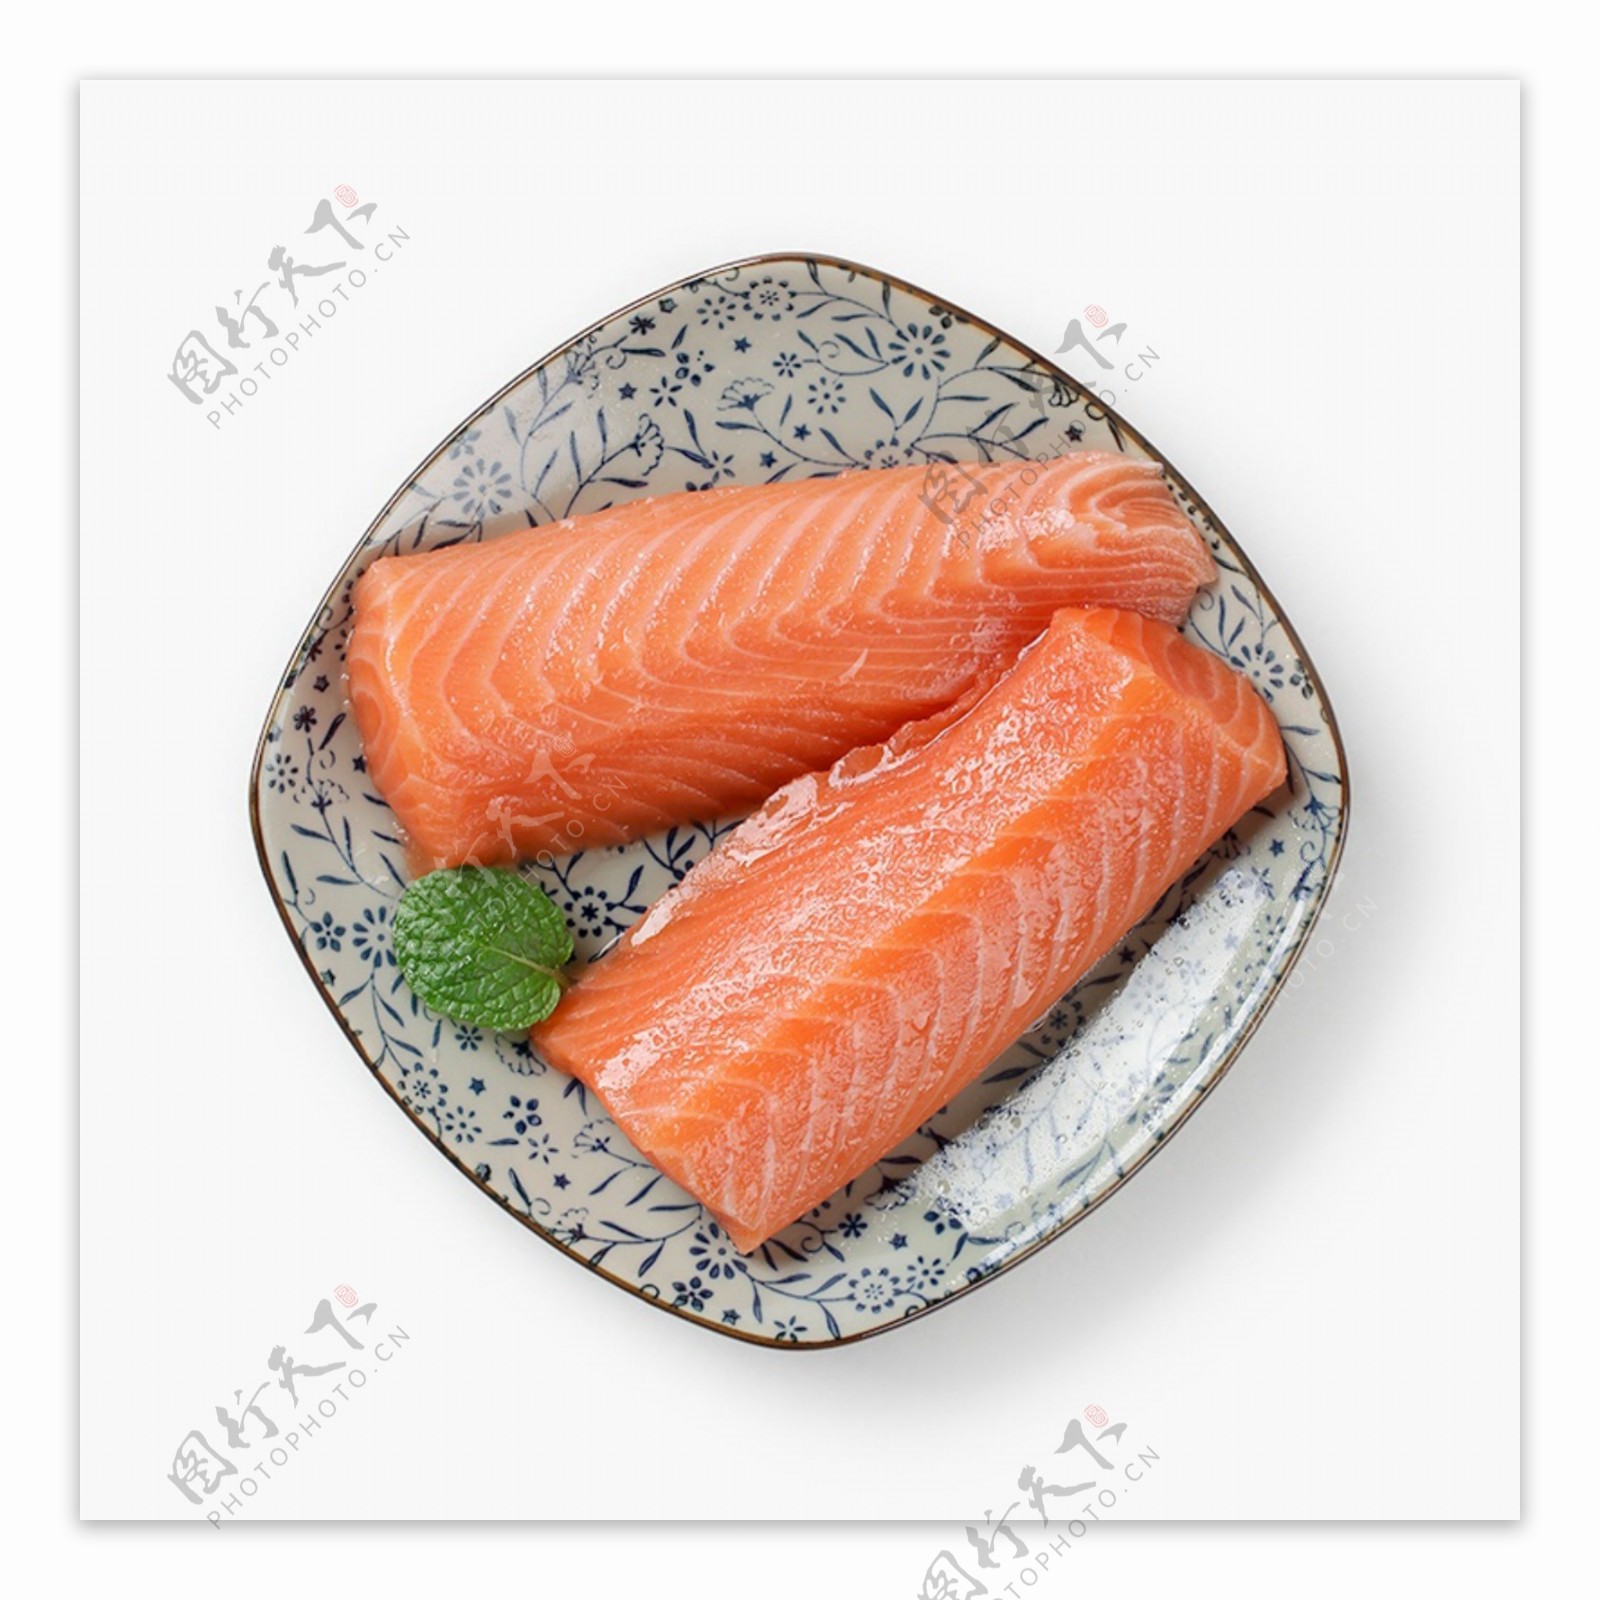 俯视图三文鱼海鲜美味食物餐饮日式料理